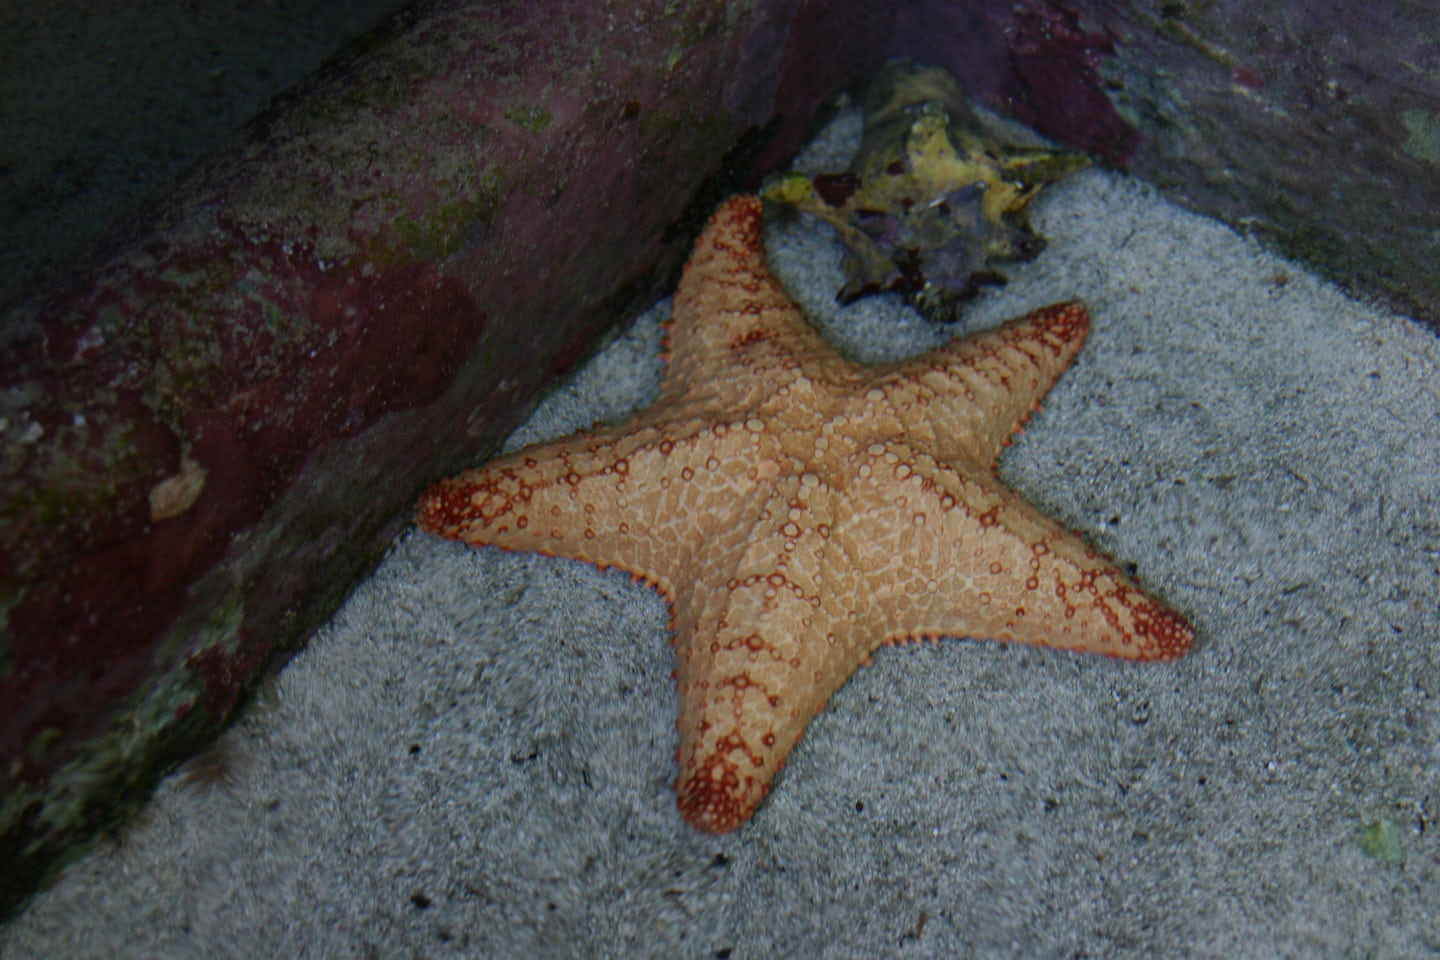 Starfish at Coral World, St. Thomas